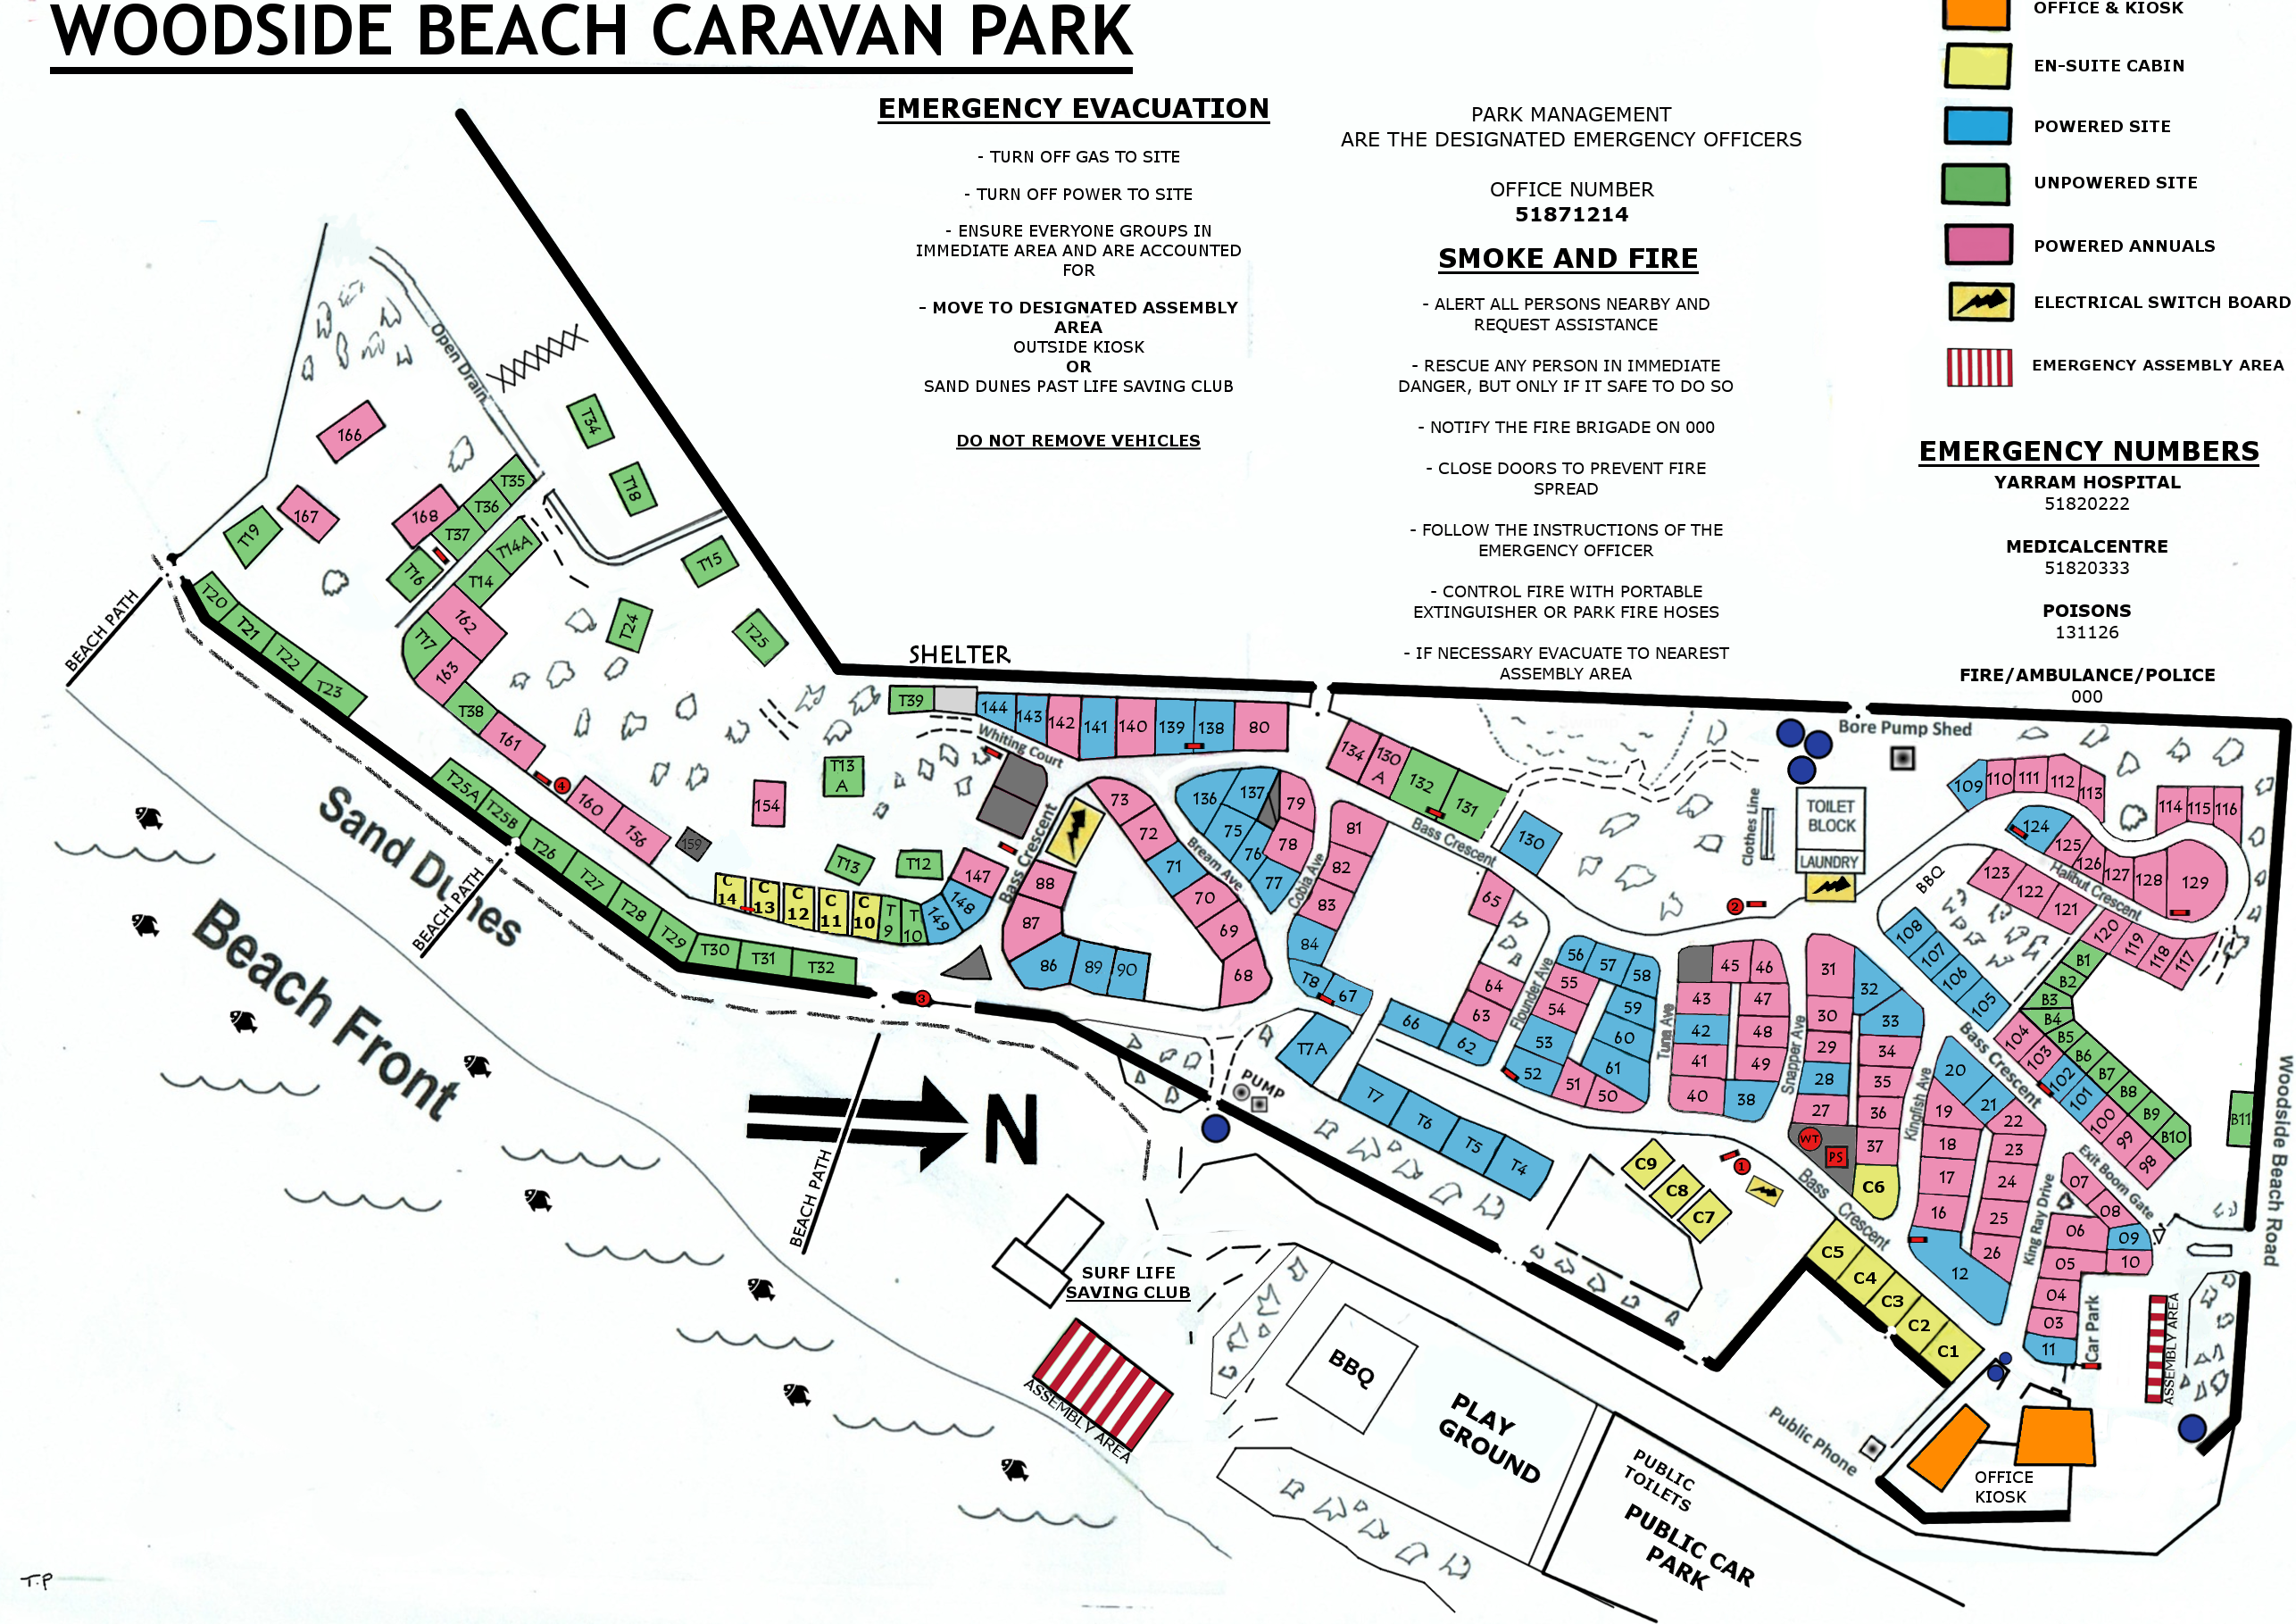 Woodside Beach Caravan Park